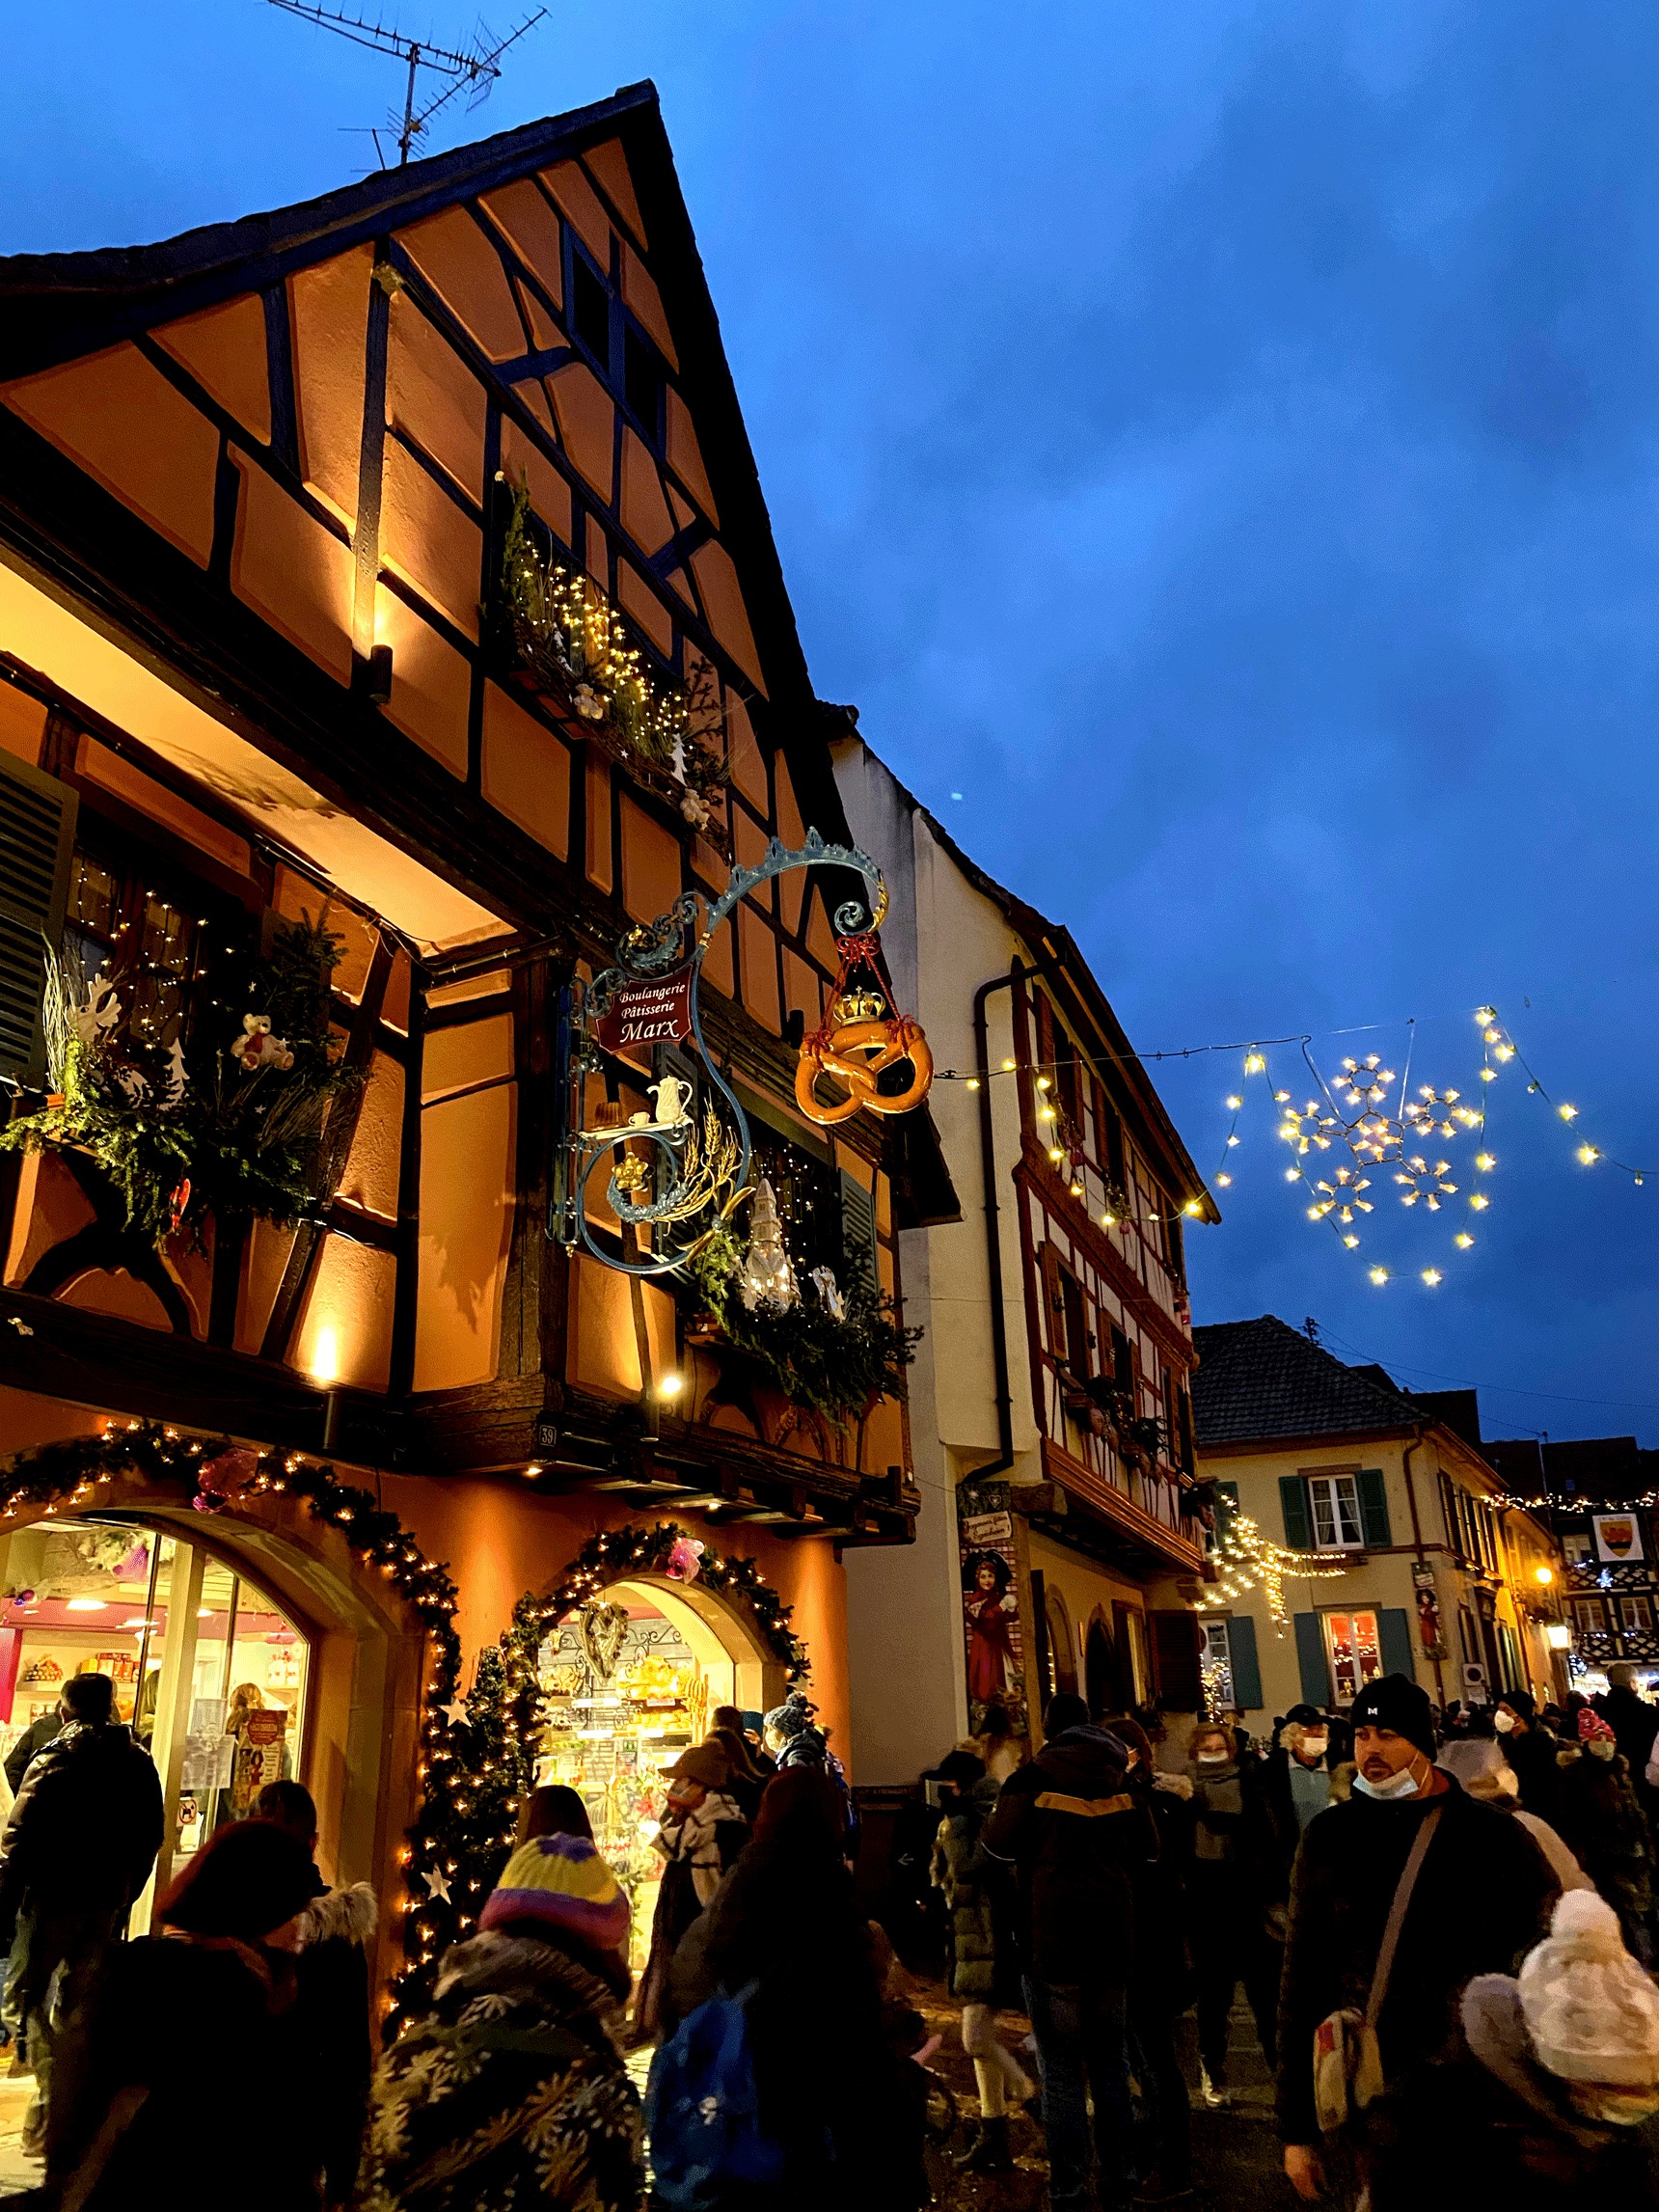 Visitez le marché de Noël d'Eguisheim en Alsace